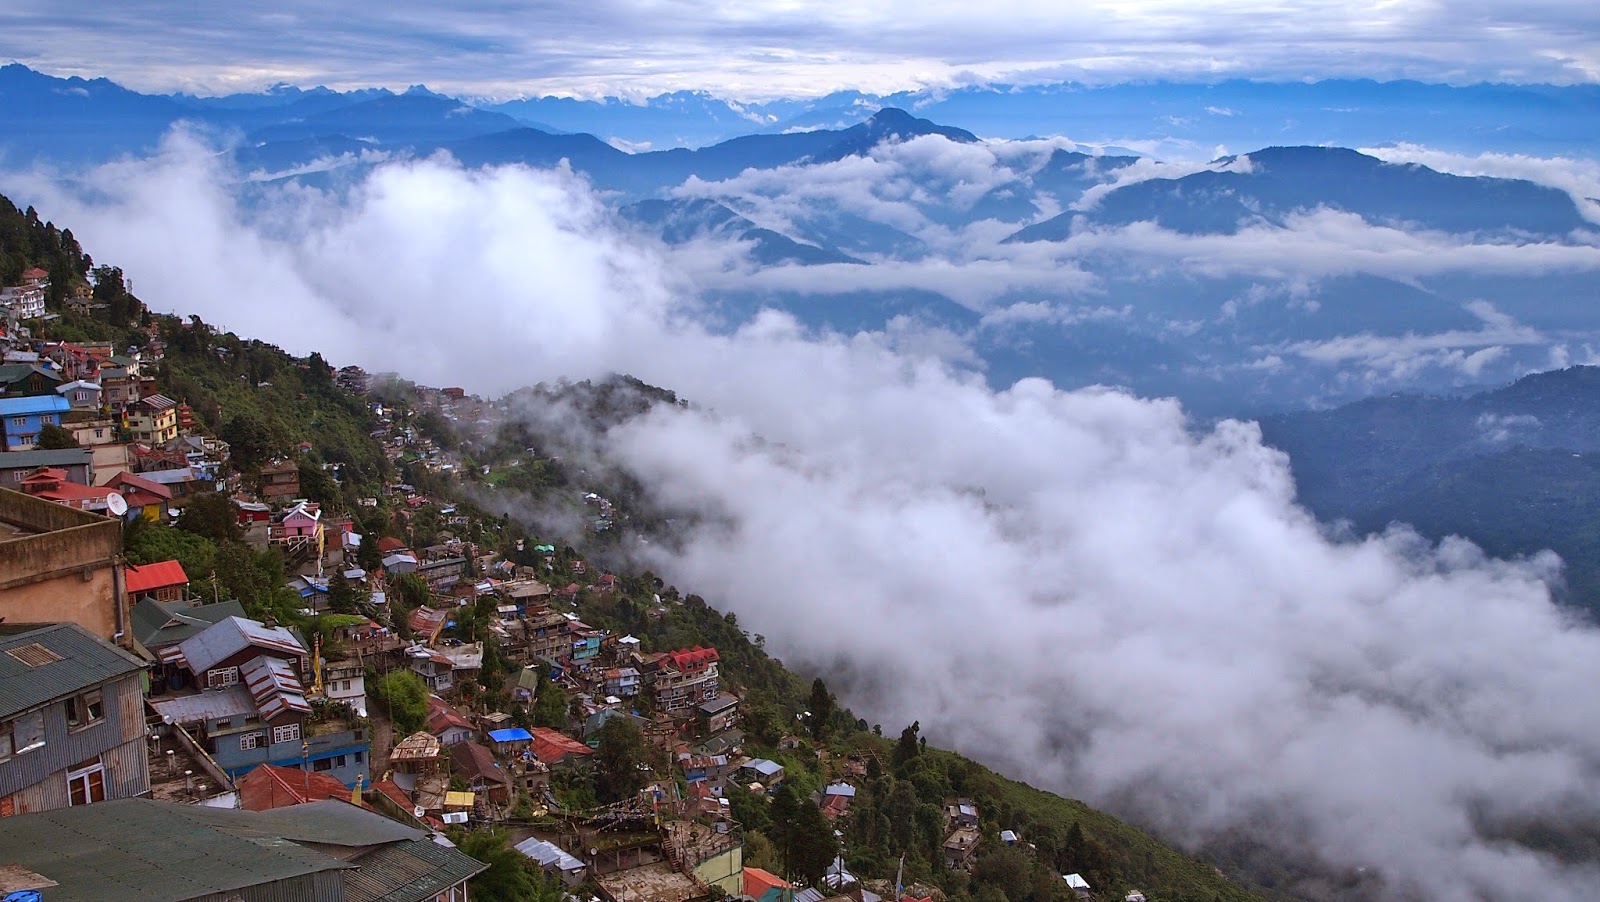 Summer Holidays in Darjeeling